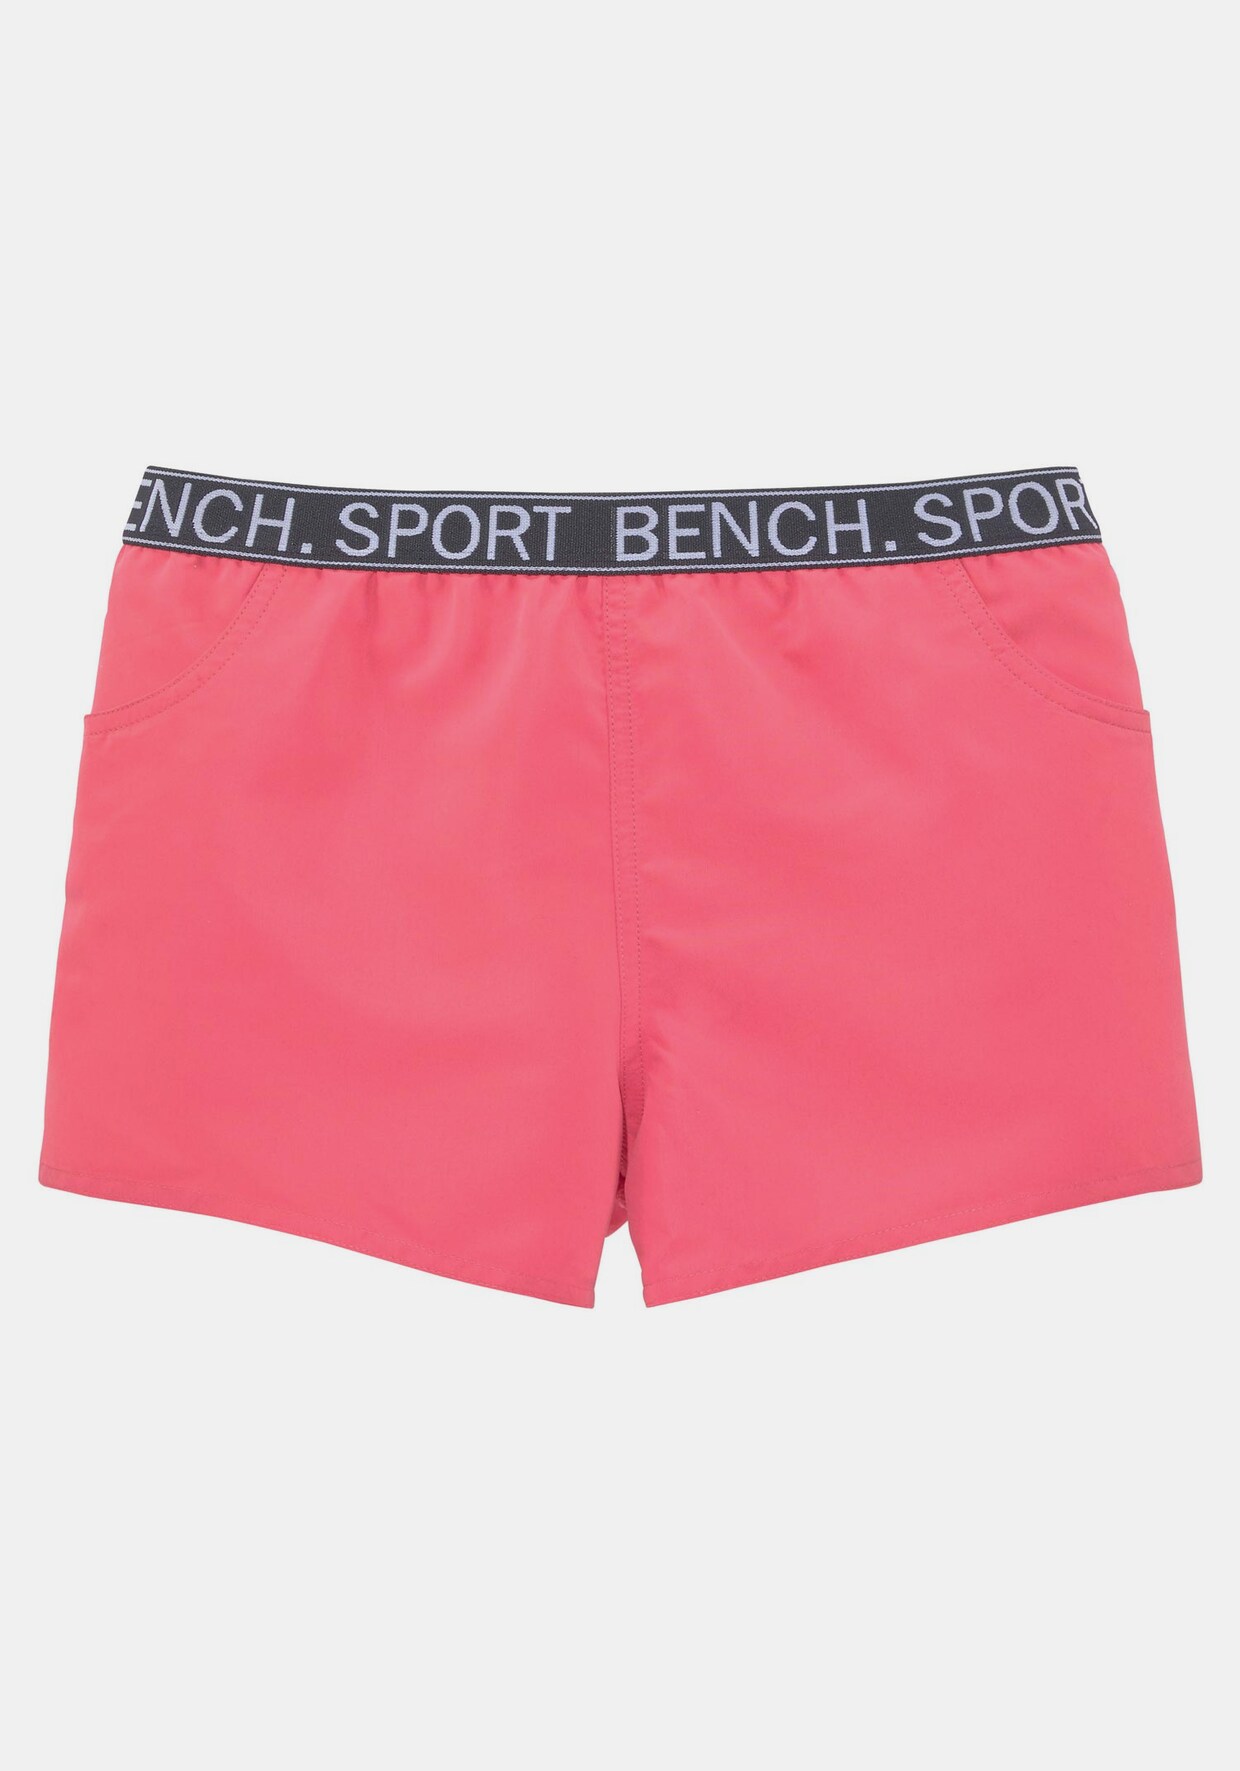 Bench. Badeshorts - pink